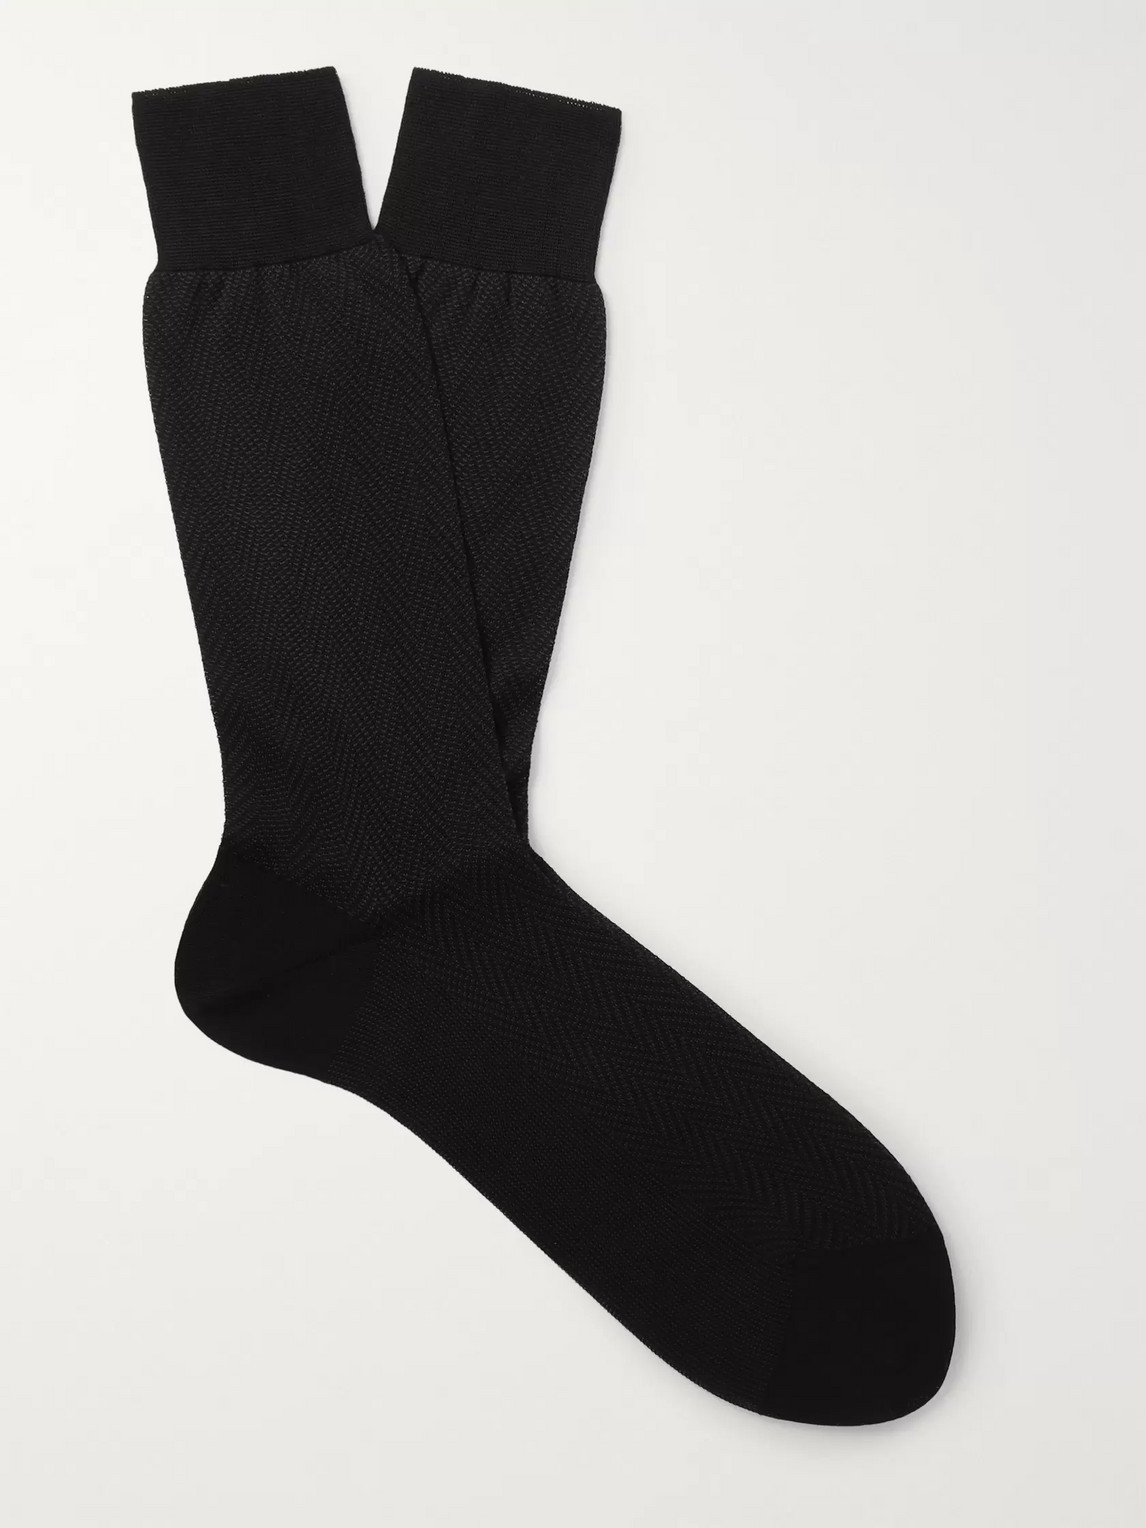 Tom Ford Herringbone Cotton Socks In Black